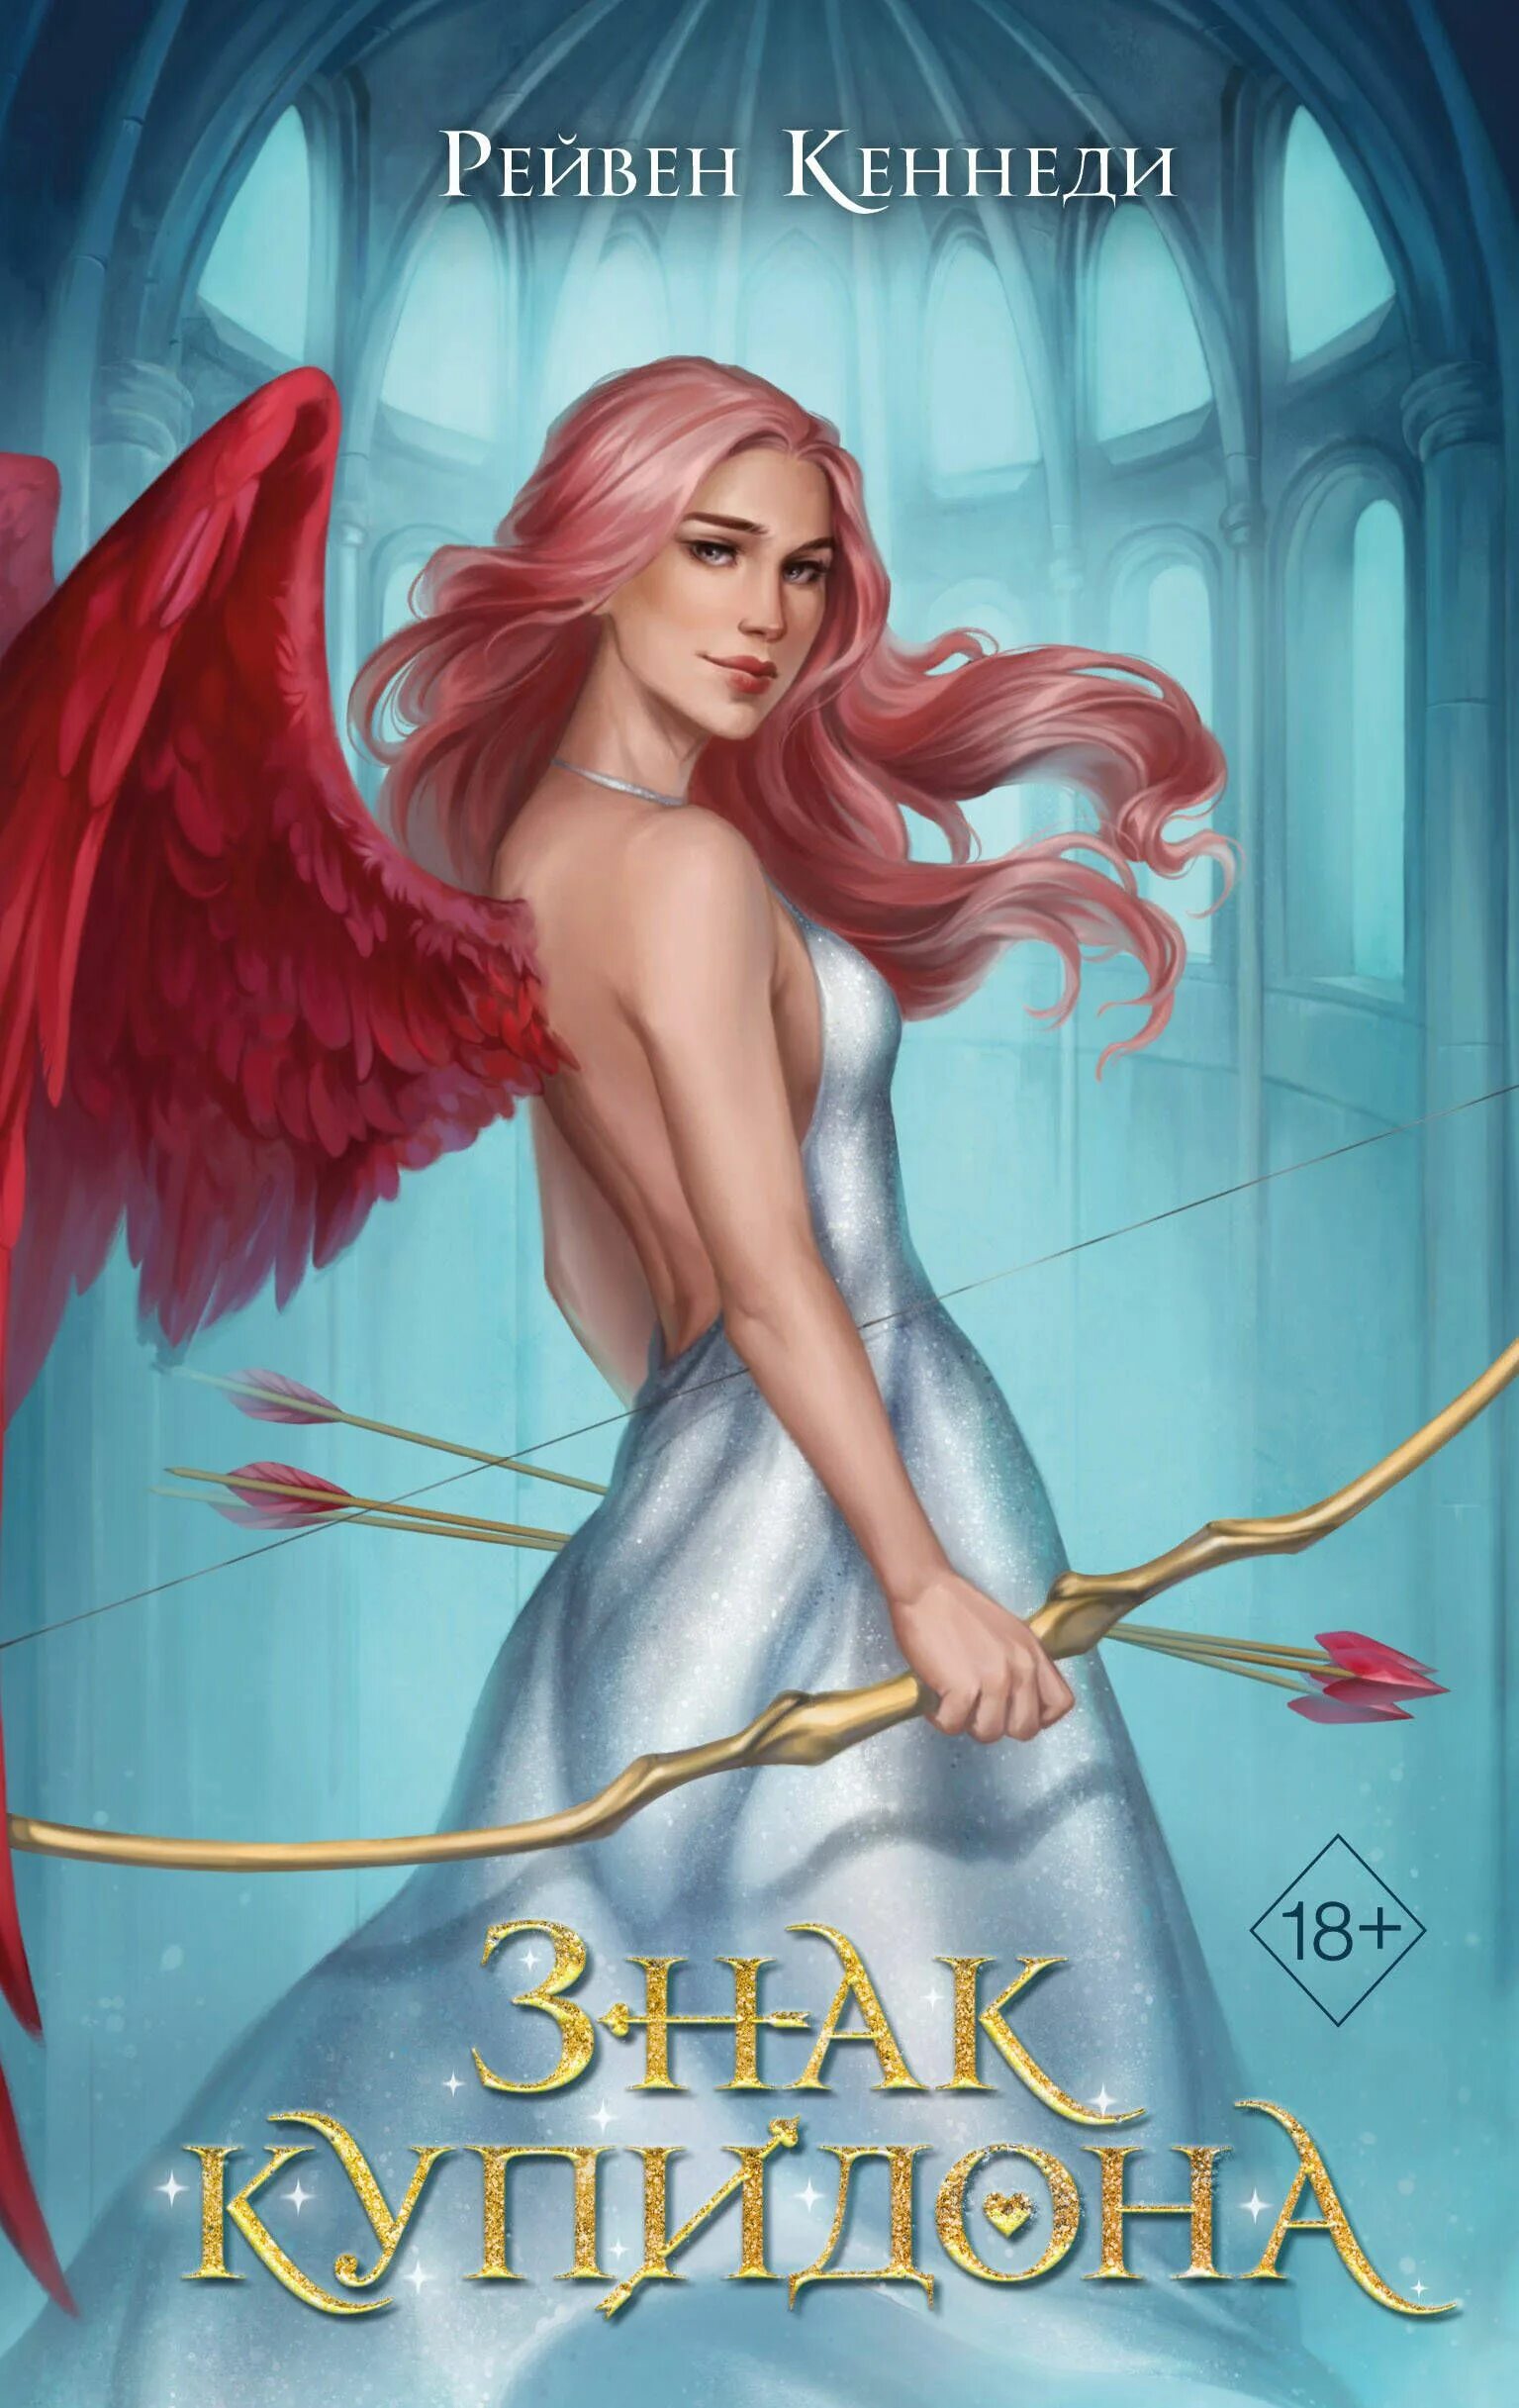 Книга купидон. Купидон книга. Купидон девушка. Девушка с книжкой. Cupid обложка.